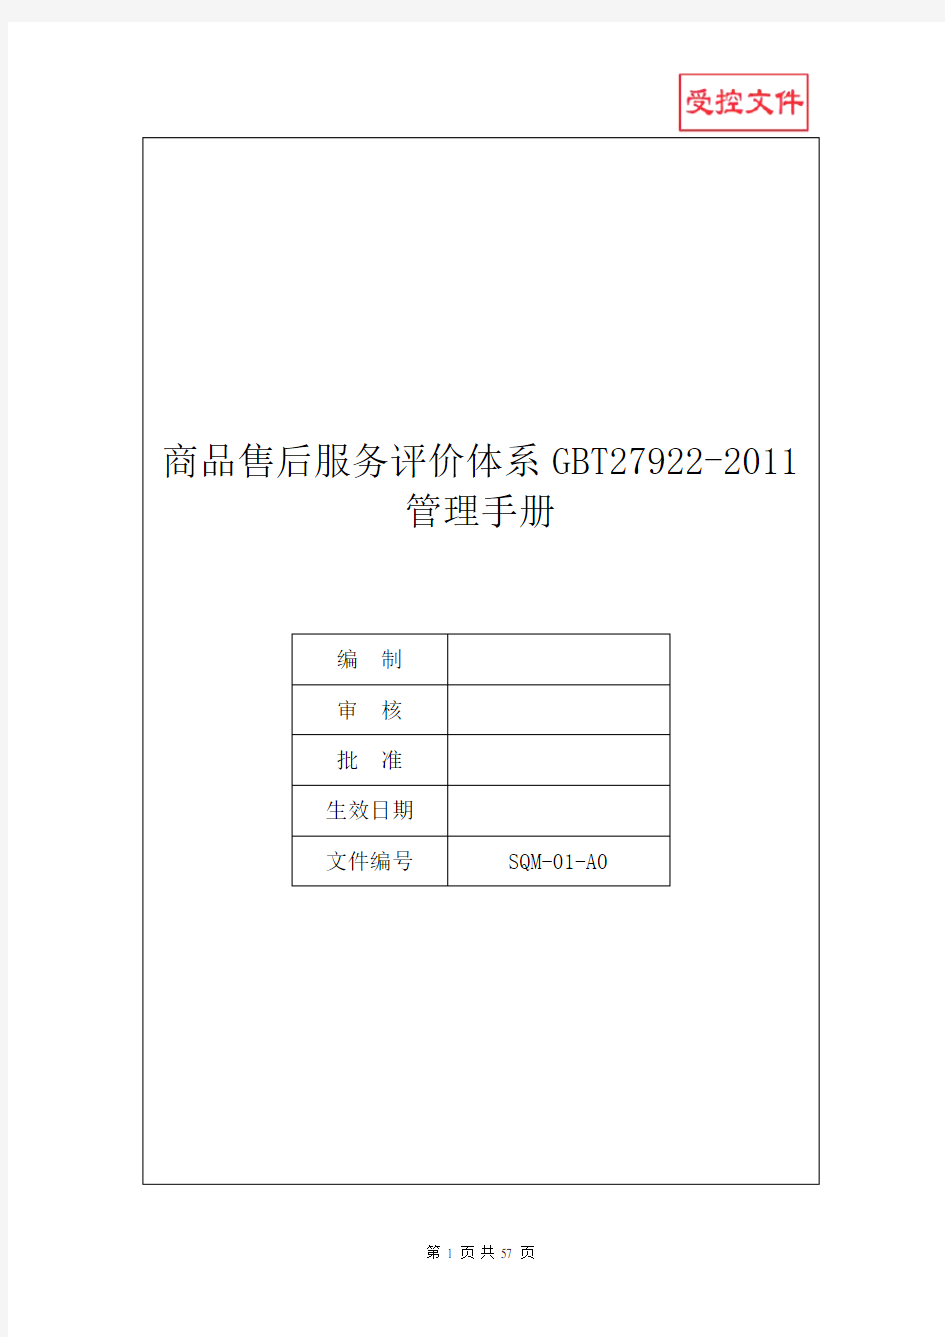 商品售后服务评价体系GBT27922-2011管理手册